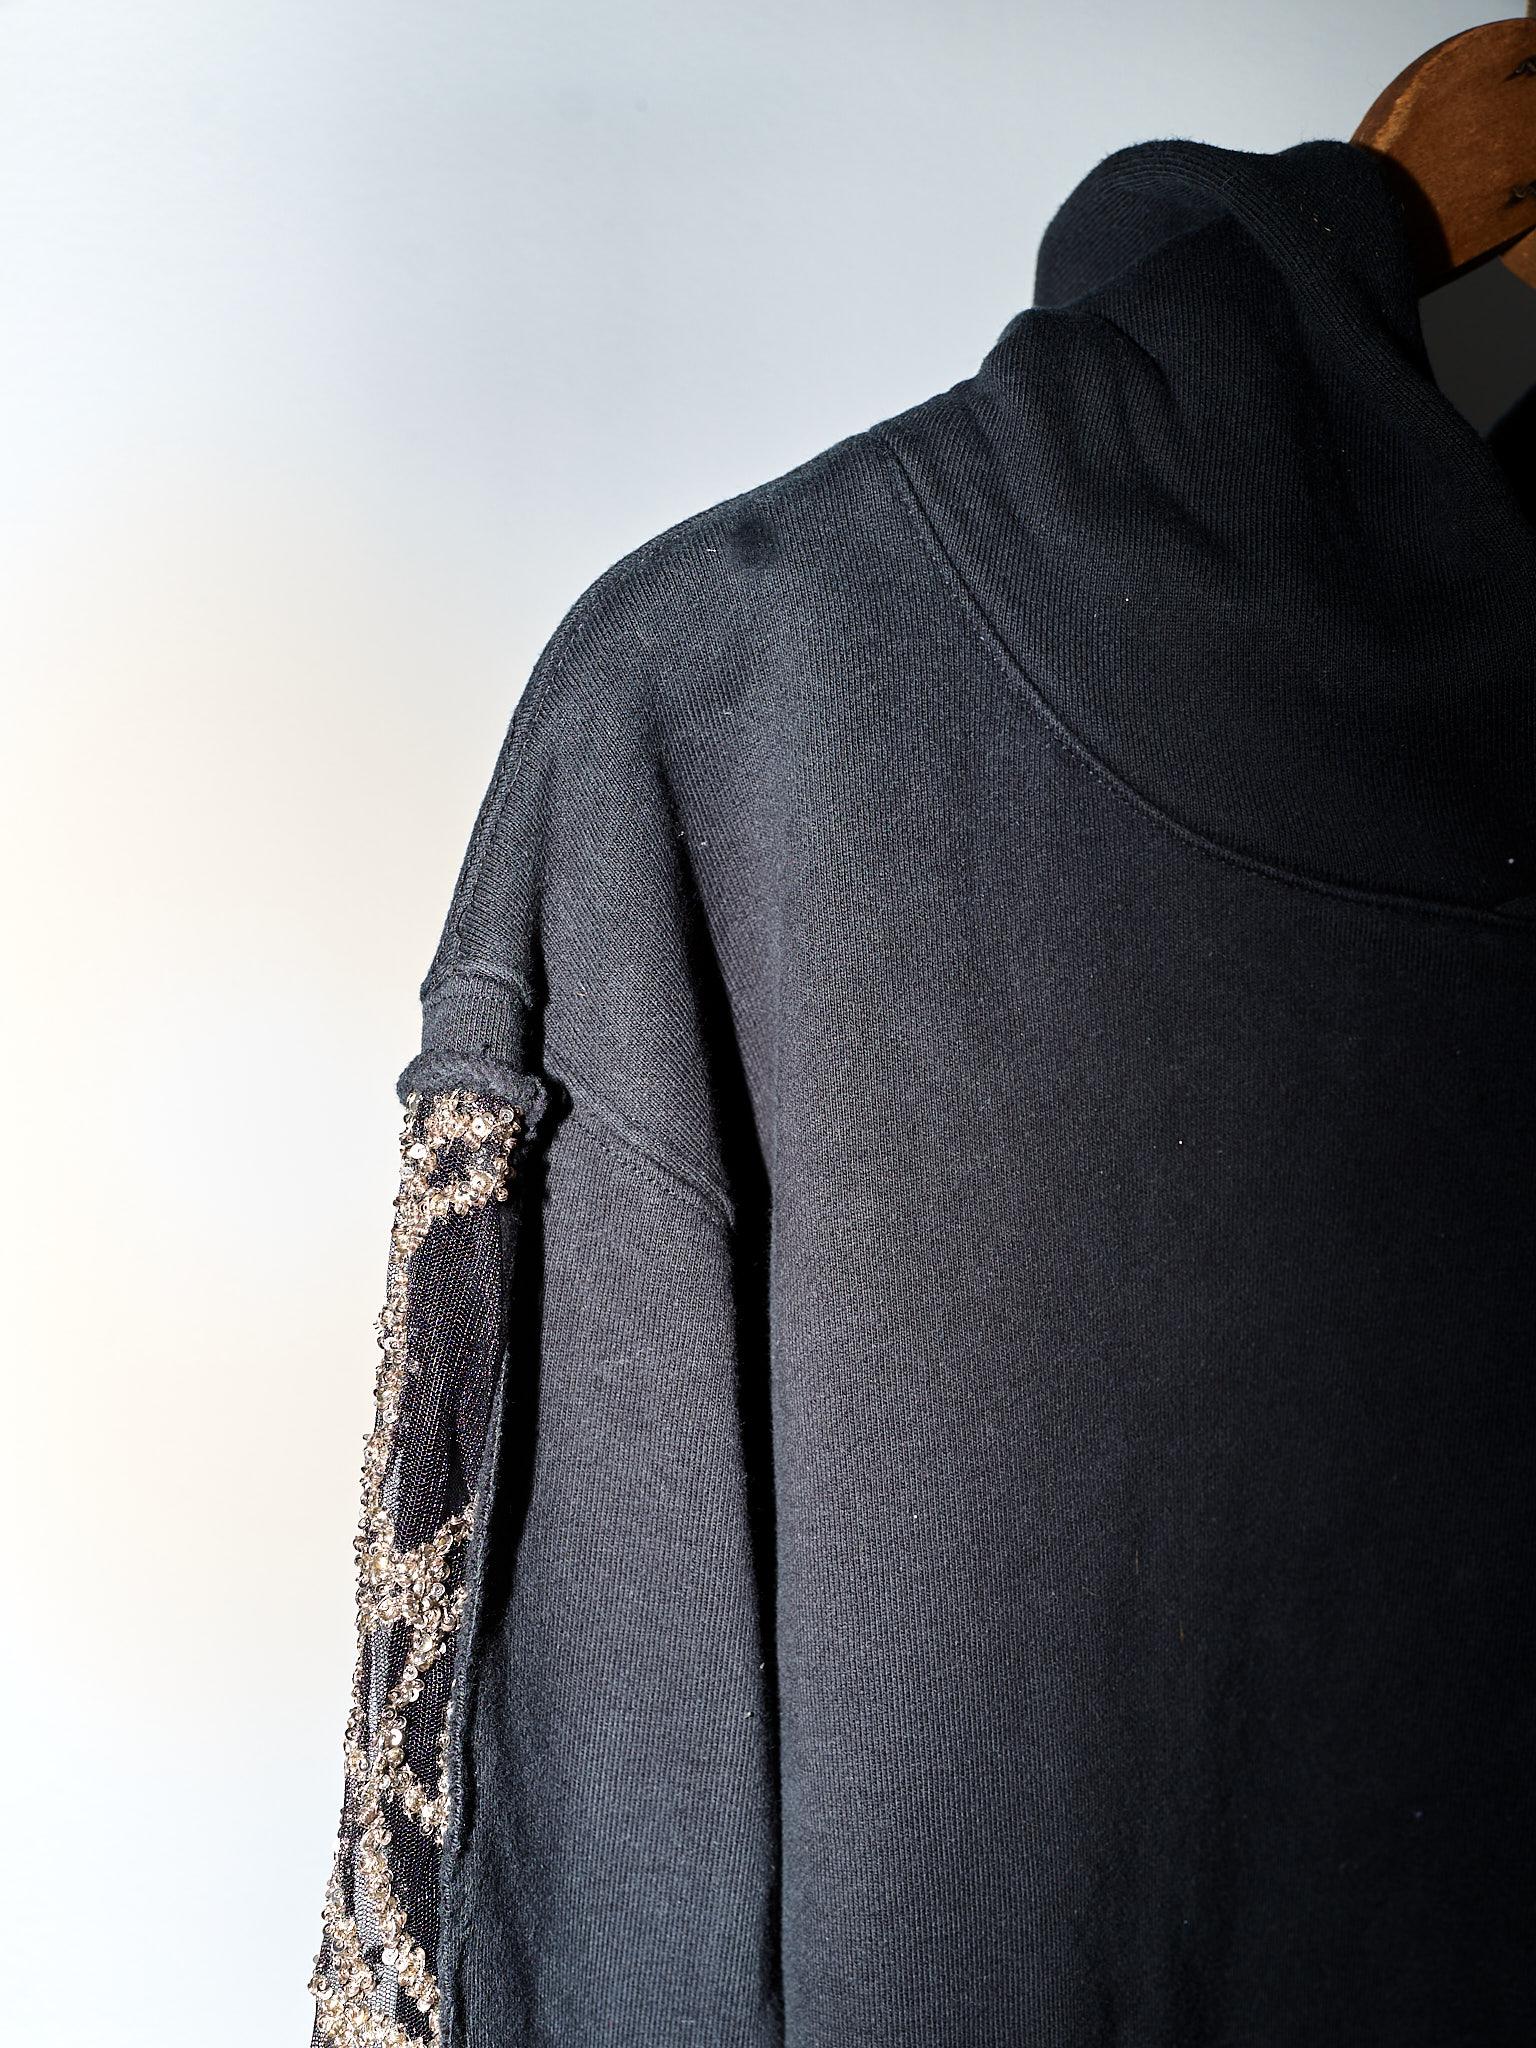 Black Hoodie Sweatshirt Transparent Sheer Mesh Chrystal Embroidery J Dauphin For Sale 3